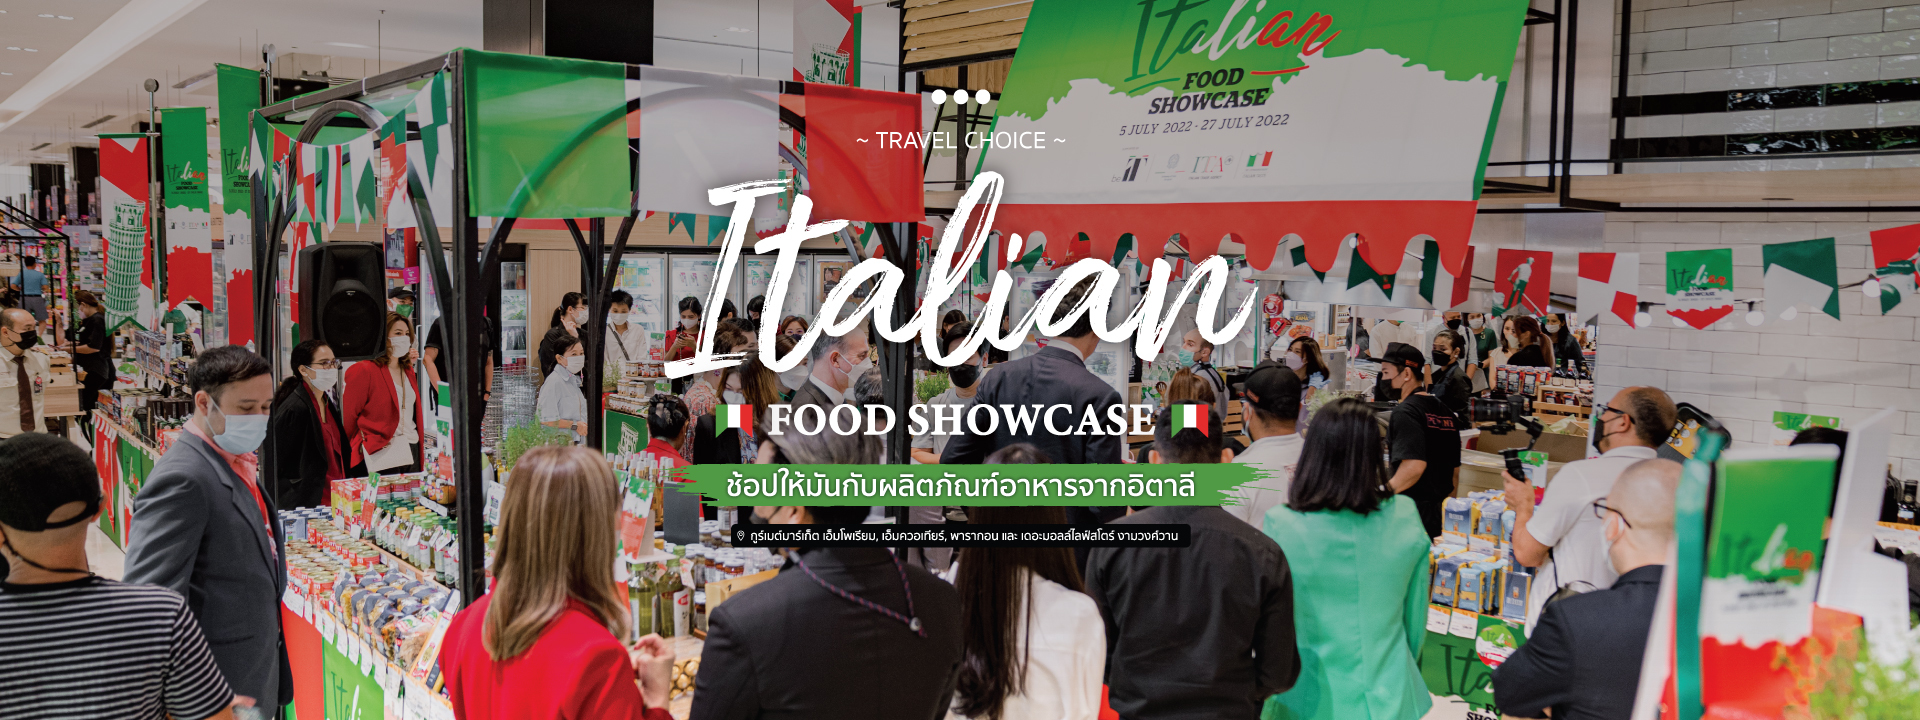 ช้อปให้มันกับผลิตภัณฑ์อาหารจากอิตาลี ในงาน “Italian Food Showcase”